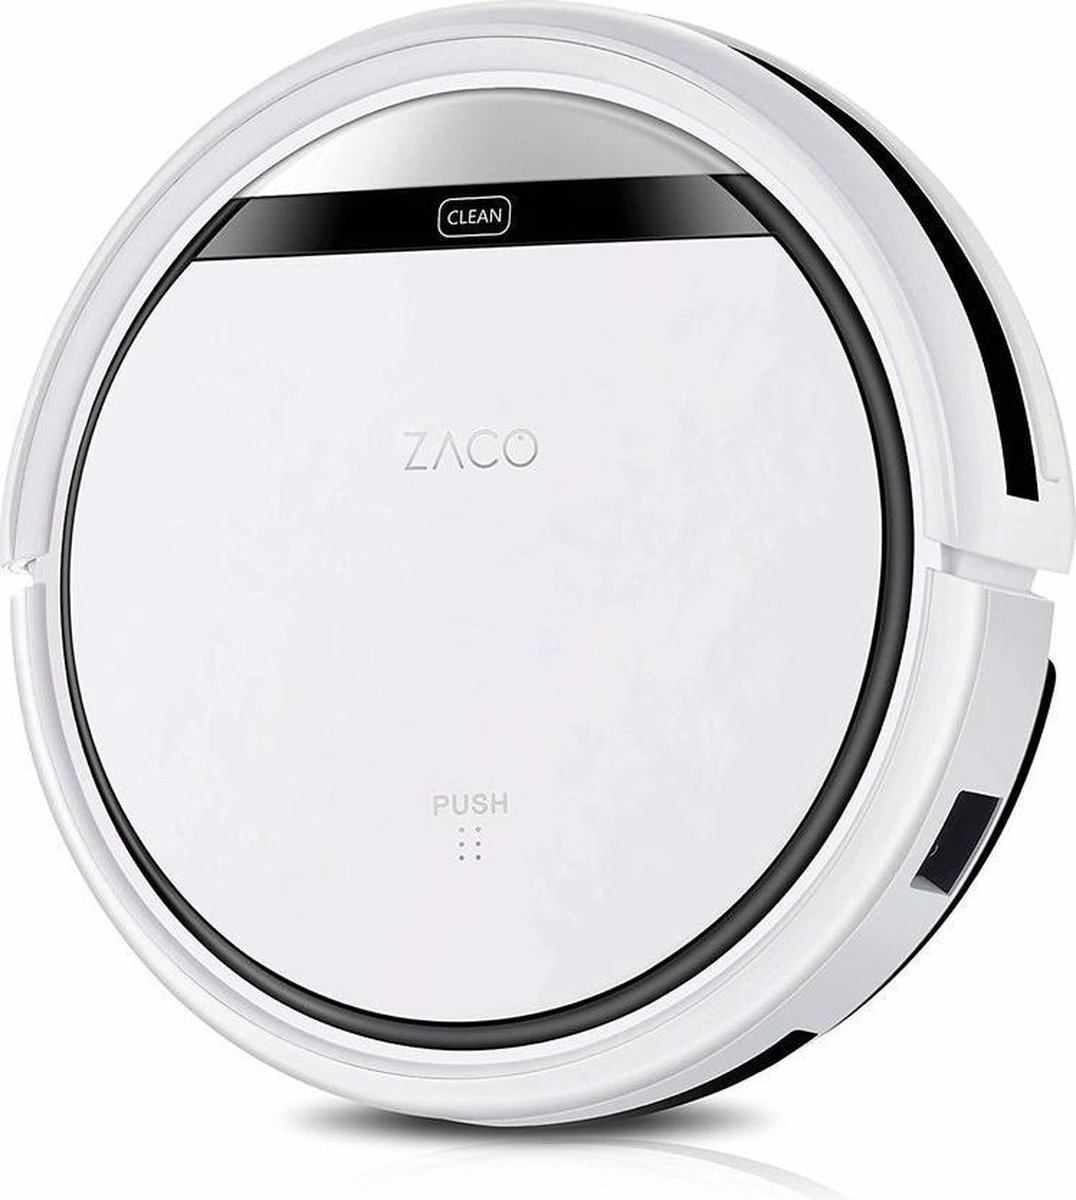 Zaco V3s Pro - Robotstofzuiger inclusie afstandsbediening - Wit